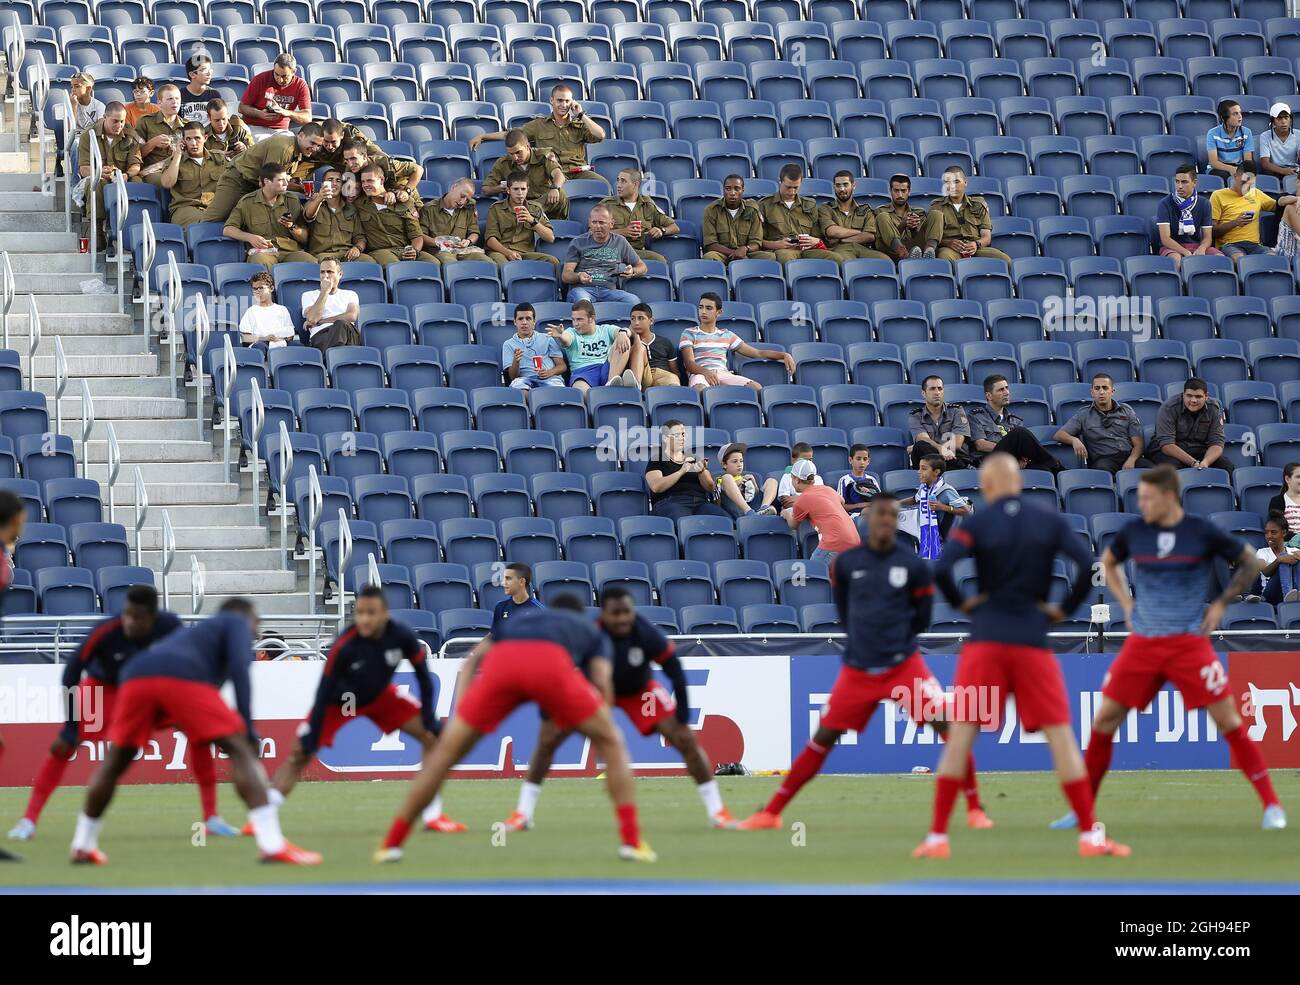 Les forces israéliennes regardent l'Angleterre s'échauffer lors du championnat 2013 de l'UEFA U21, séance d'entraînement d'Angleterre au stade Teddy à Jérusalem, Israël, le 10 juin 2013. Banque D'Images